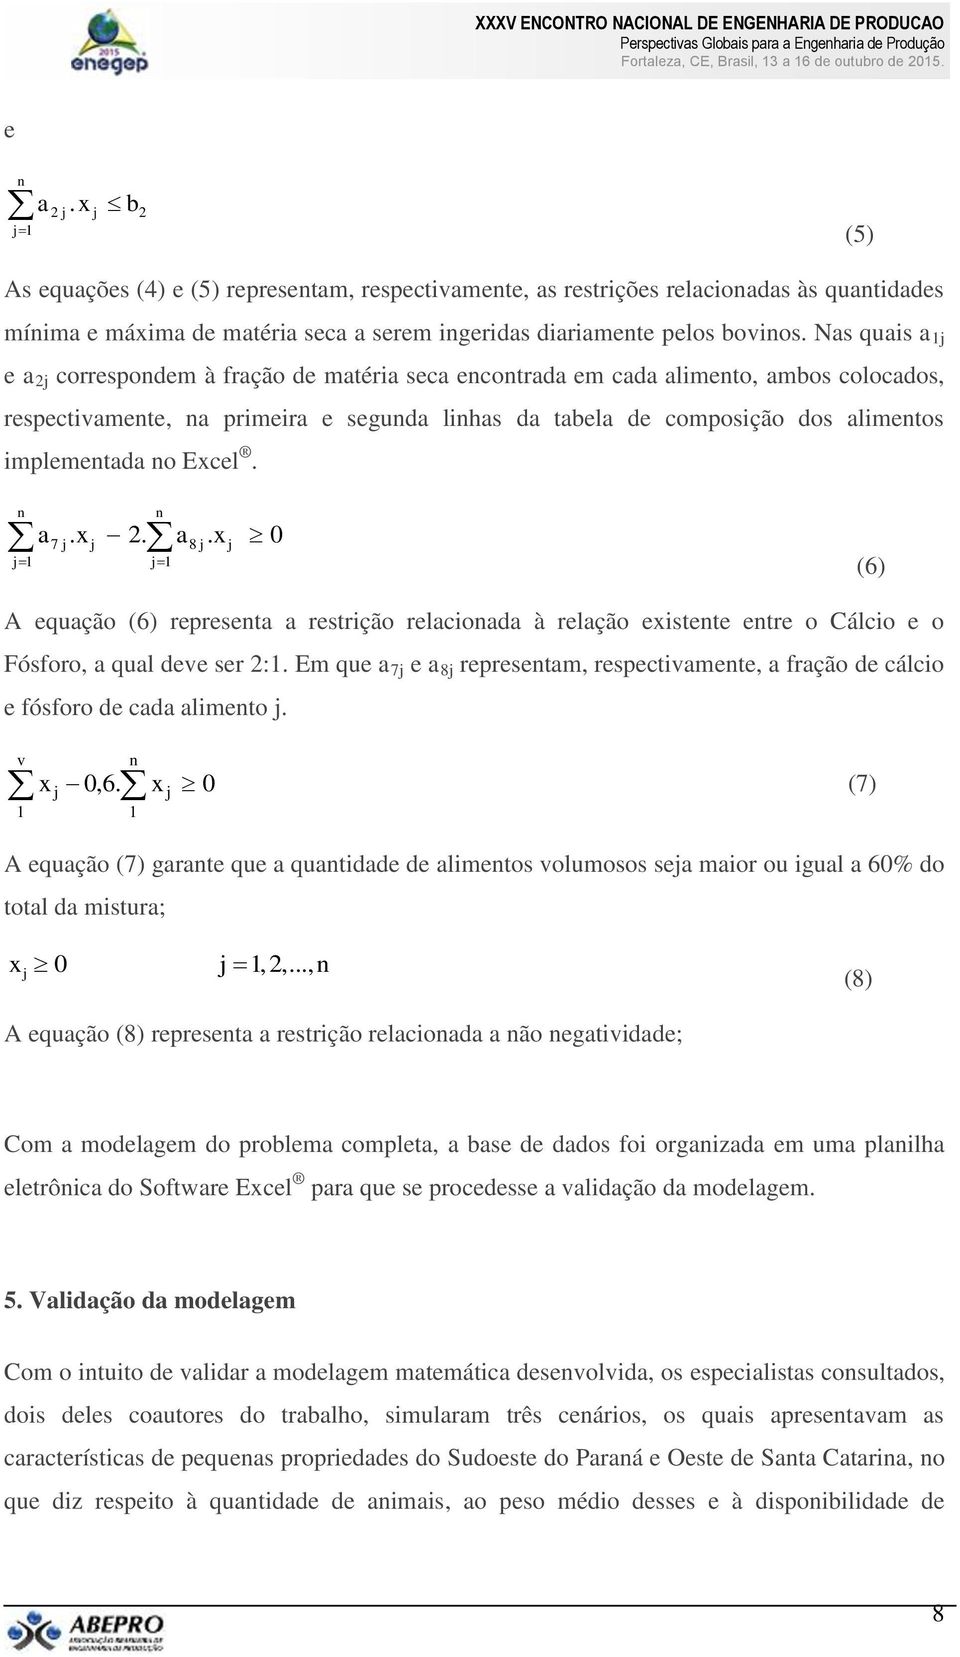 a7. x 2. a8. x 0 1 1 (6) A equação (6) represeta a restrição relacioada à relação existete etre o Cálcio e o Fósforo, a qual deve ser 2:1.